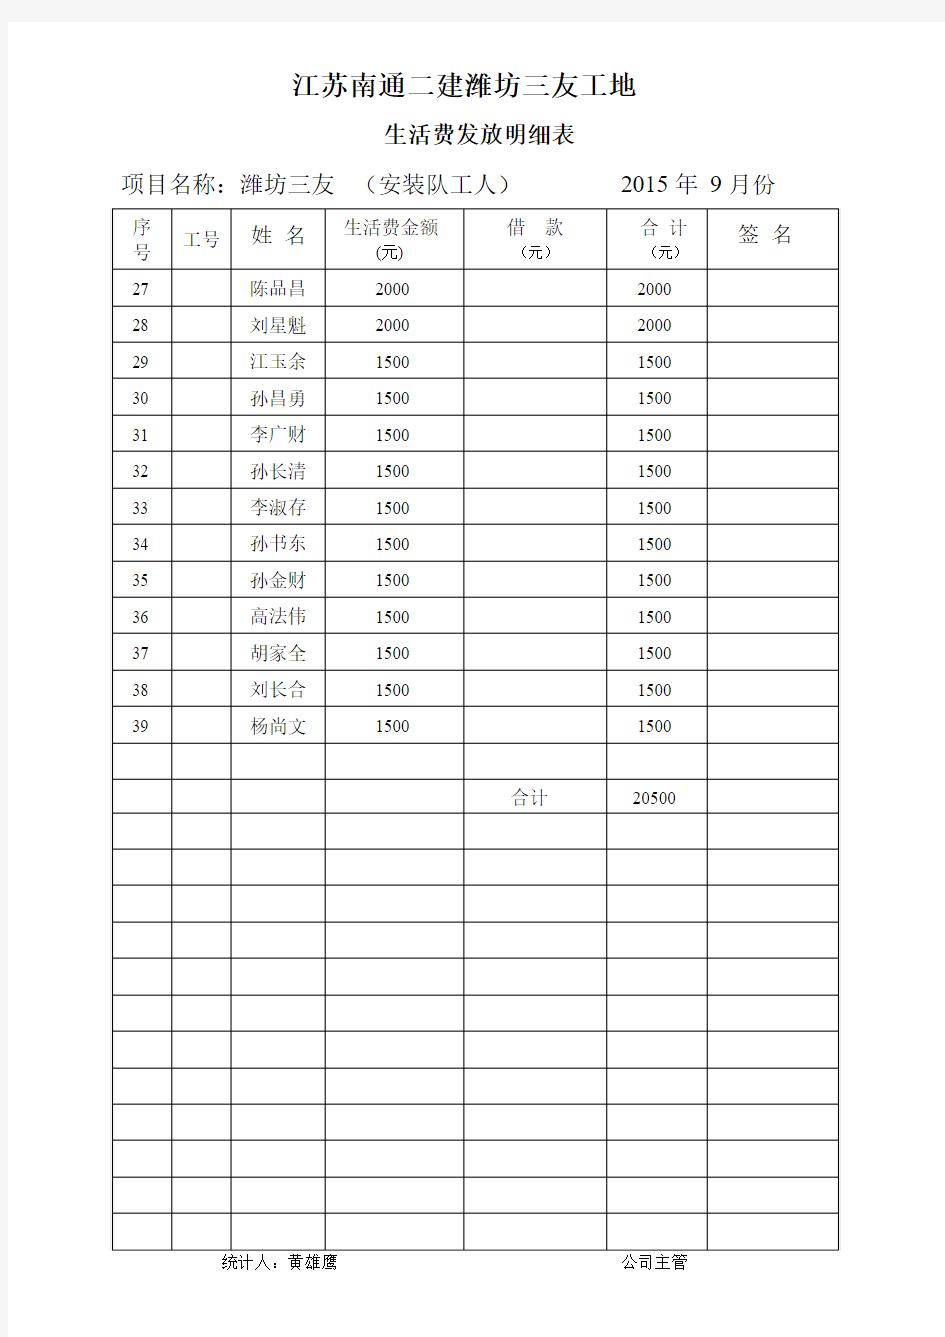 职工生活费登记表(2015-9月份)